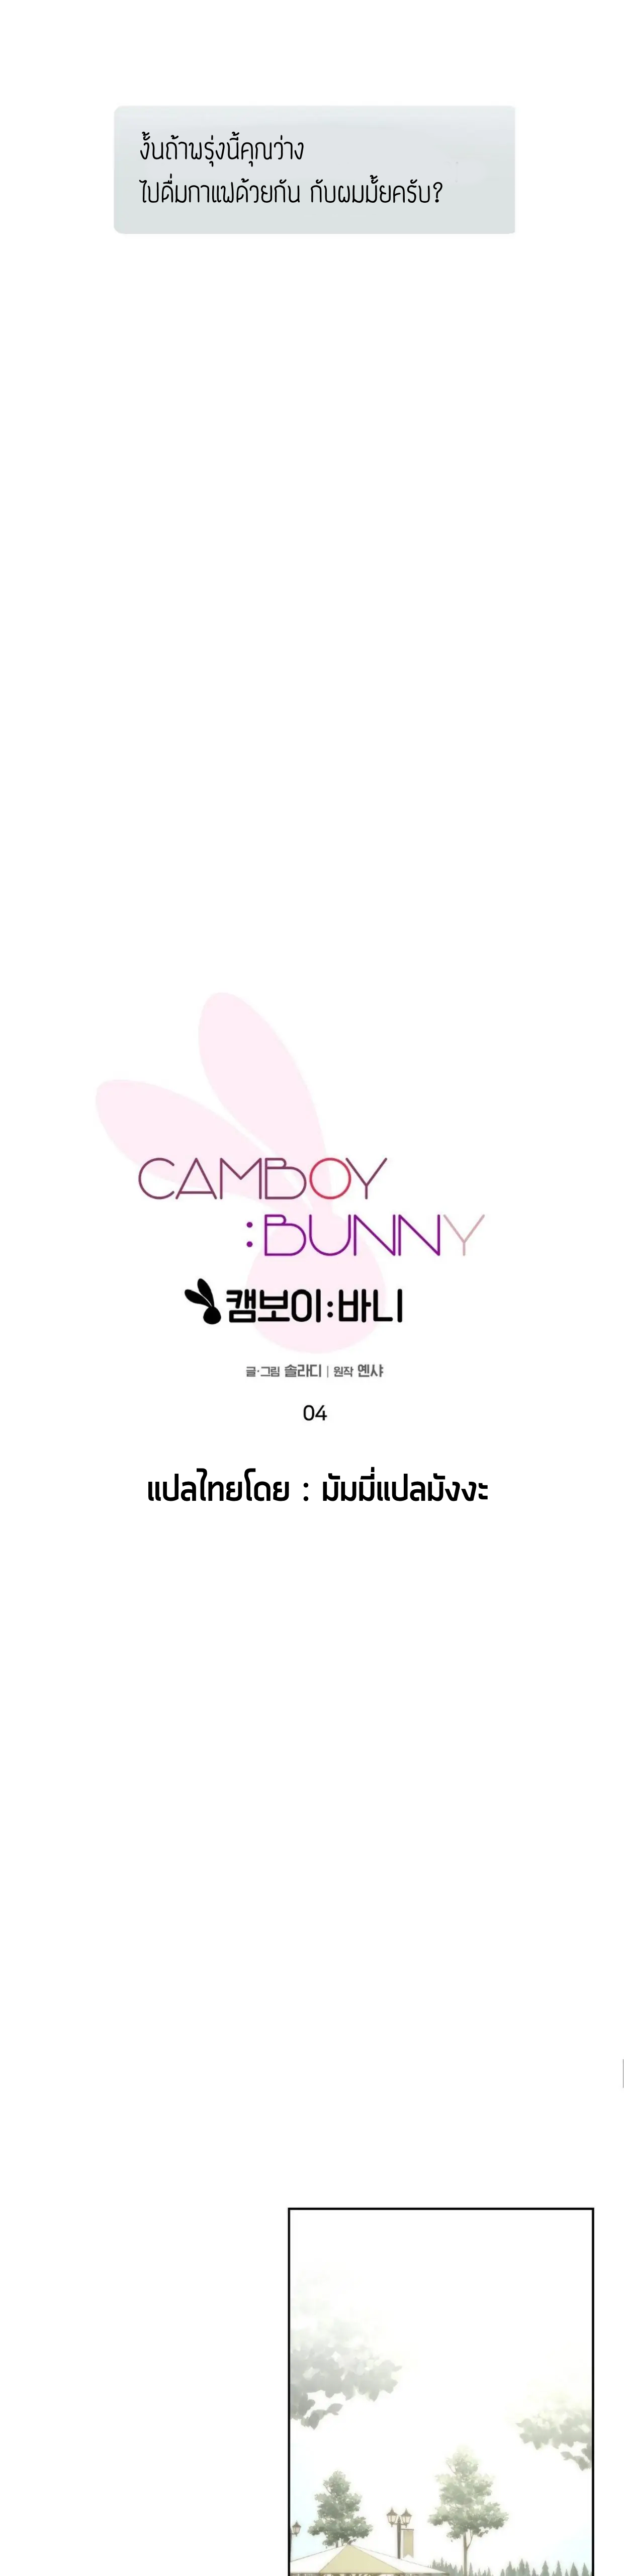 Camboy Bunny 4 (16)